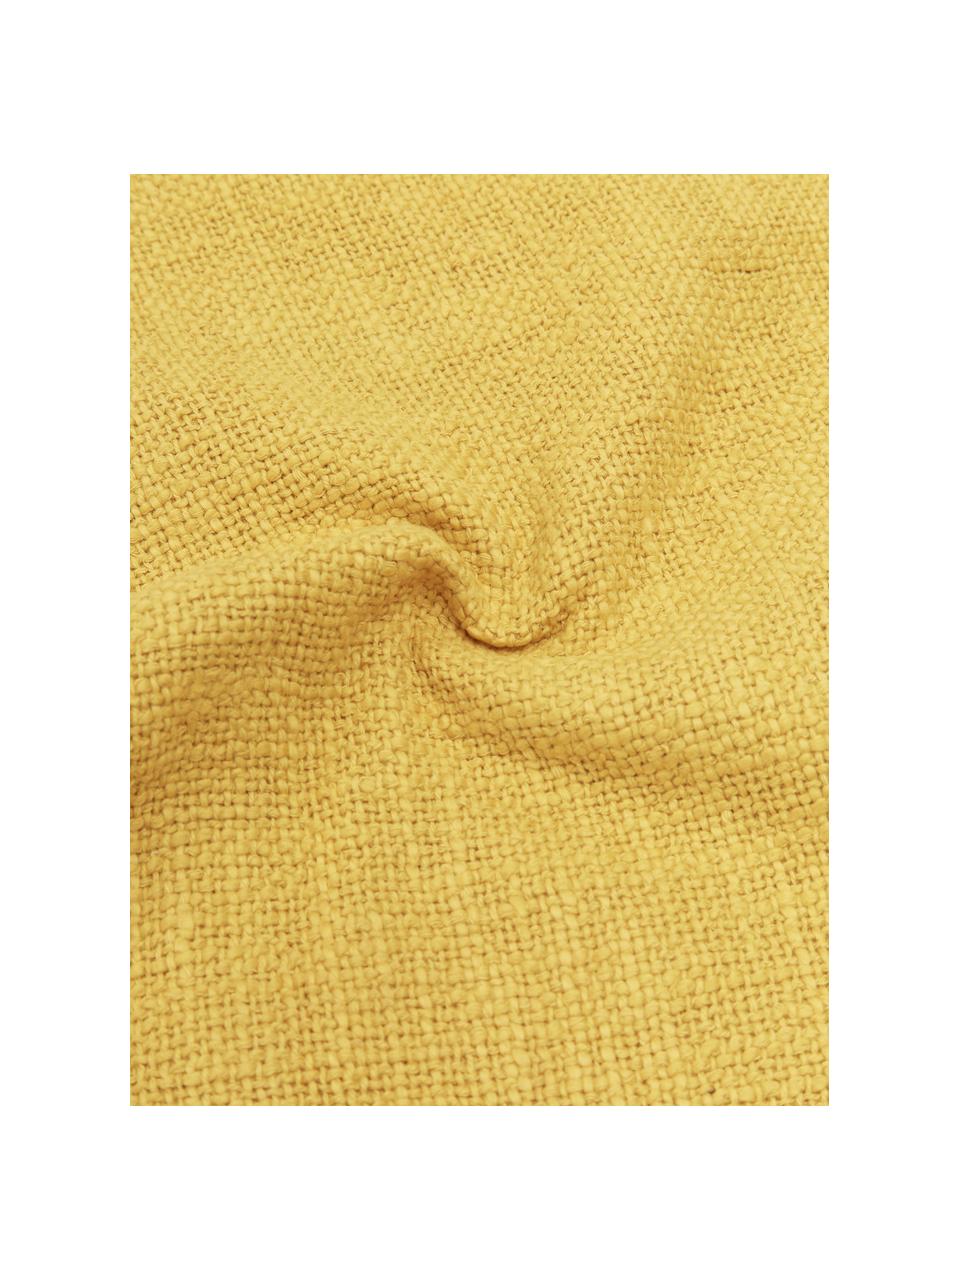 Federa arredo color giallo Anise, 100% cotone, Giallo, Larg. 30 x Lung. 50 cm